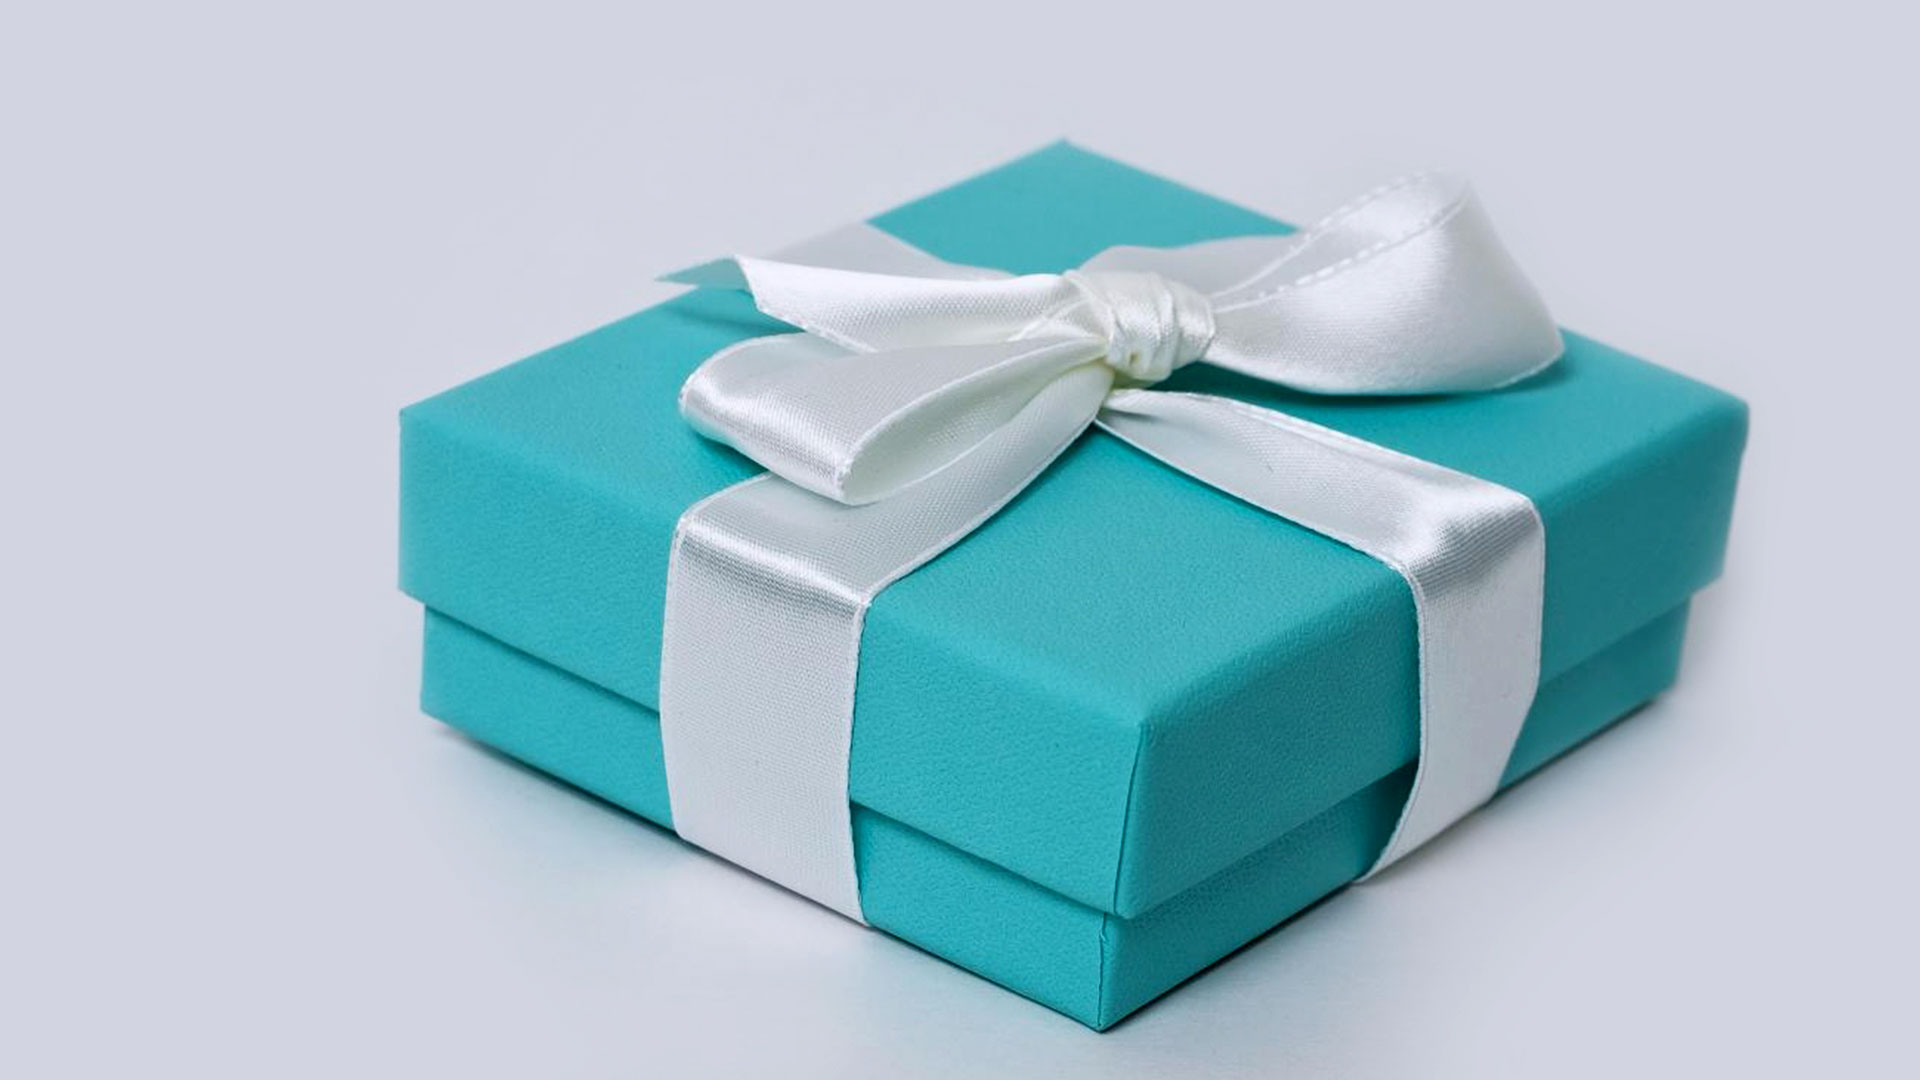 Подарок синий цвет. Подарок голубого цвета. Подарок Тиффани. Tiffany Blue коробка. Голубая коробочка от Тиффани.